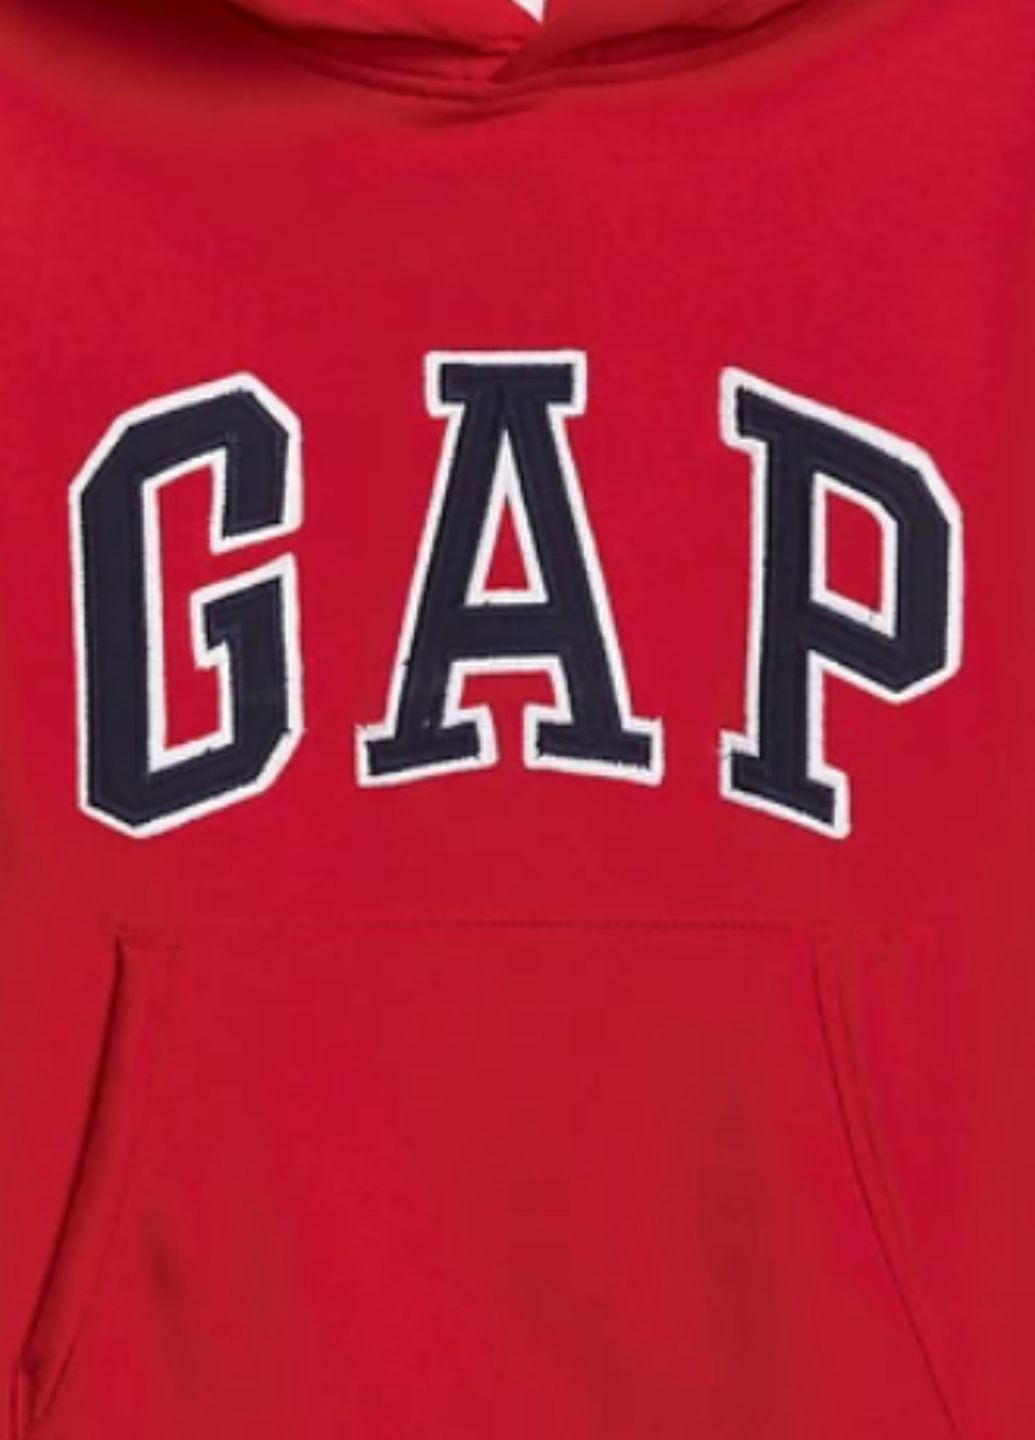 Худи GАР на флисе для подростков с брендовым лого, 164-176 см, 14-16 л Gap (266141403)